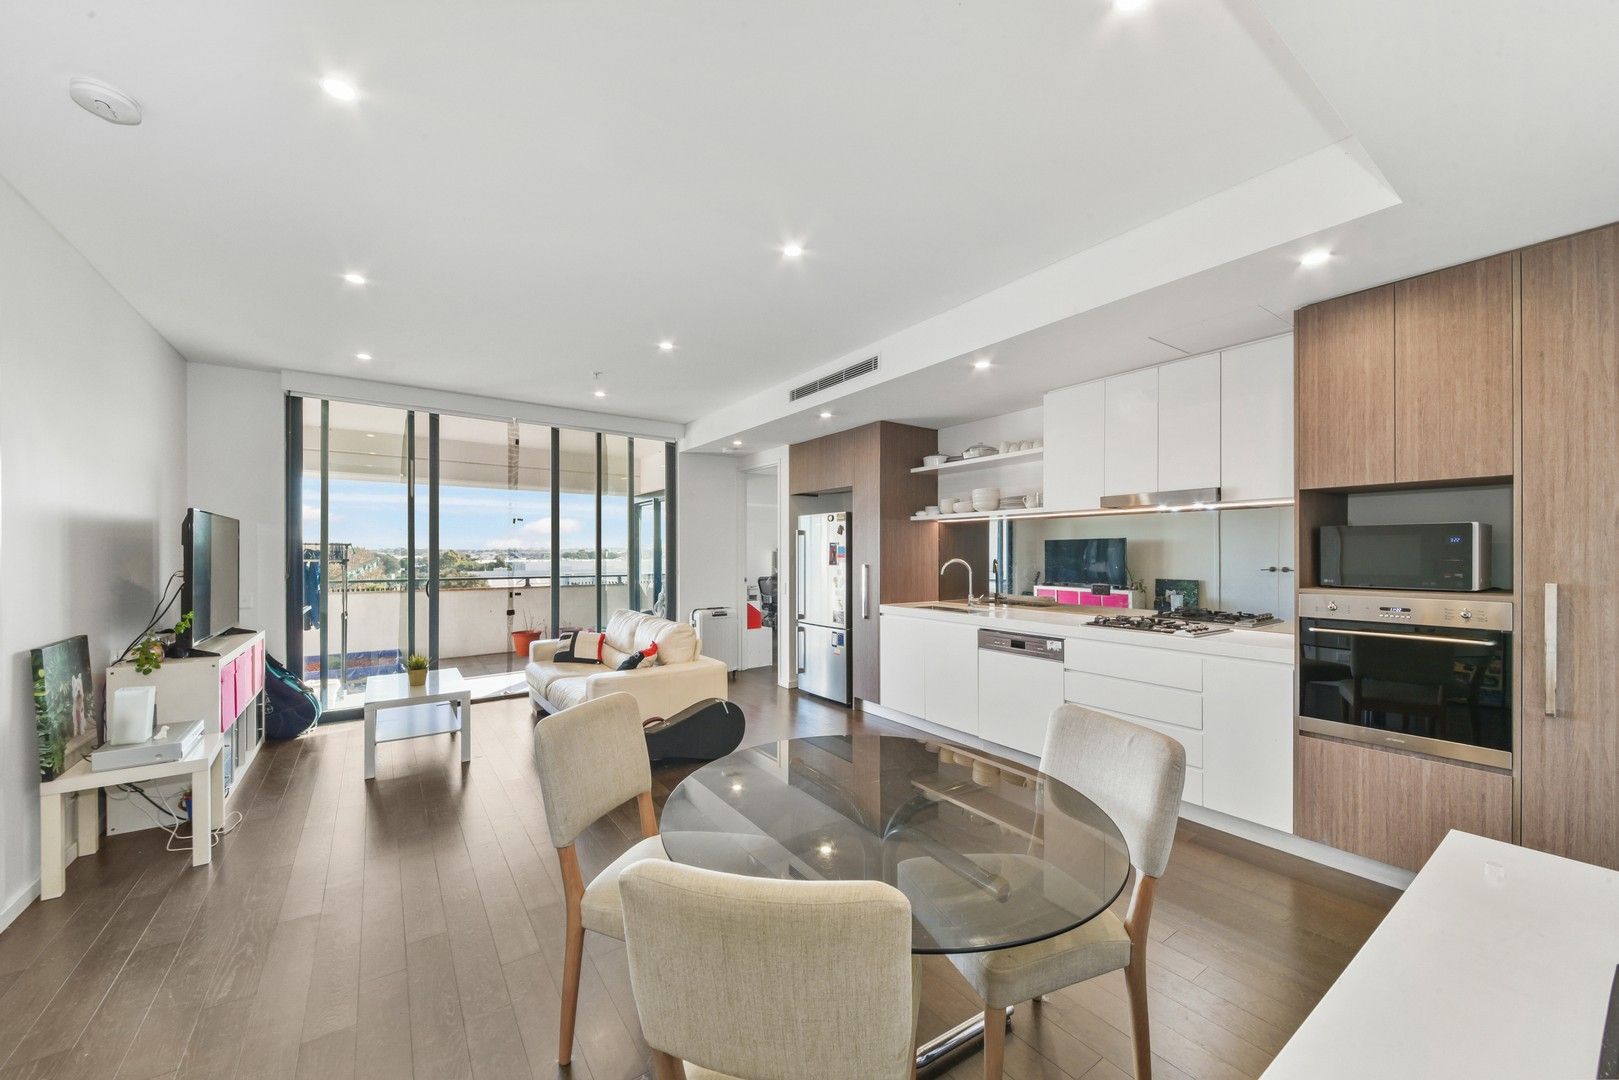 2 bedrooms Apartment / Unit / Flat in 413A/7 Kent Road MASCOT NSW, 2020